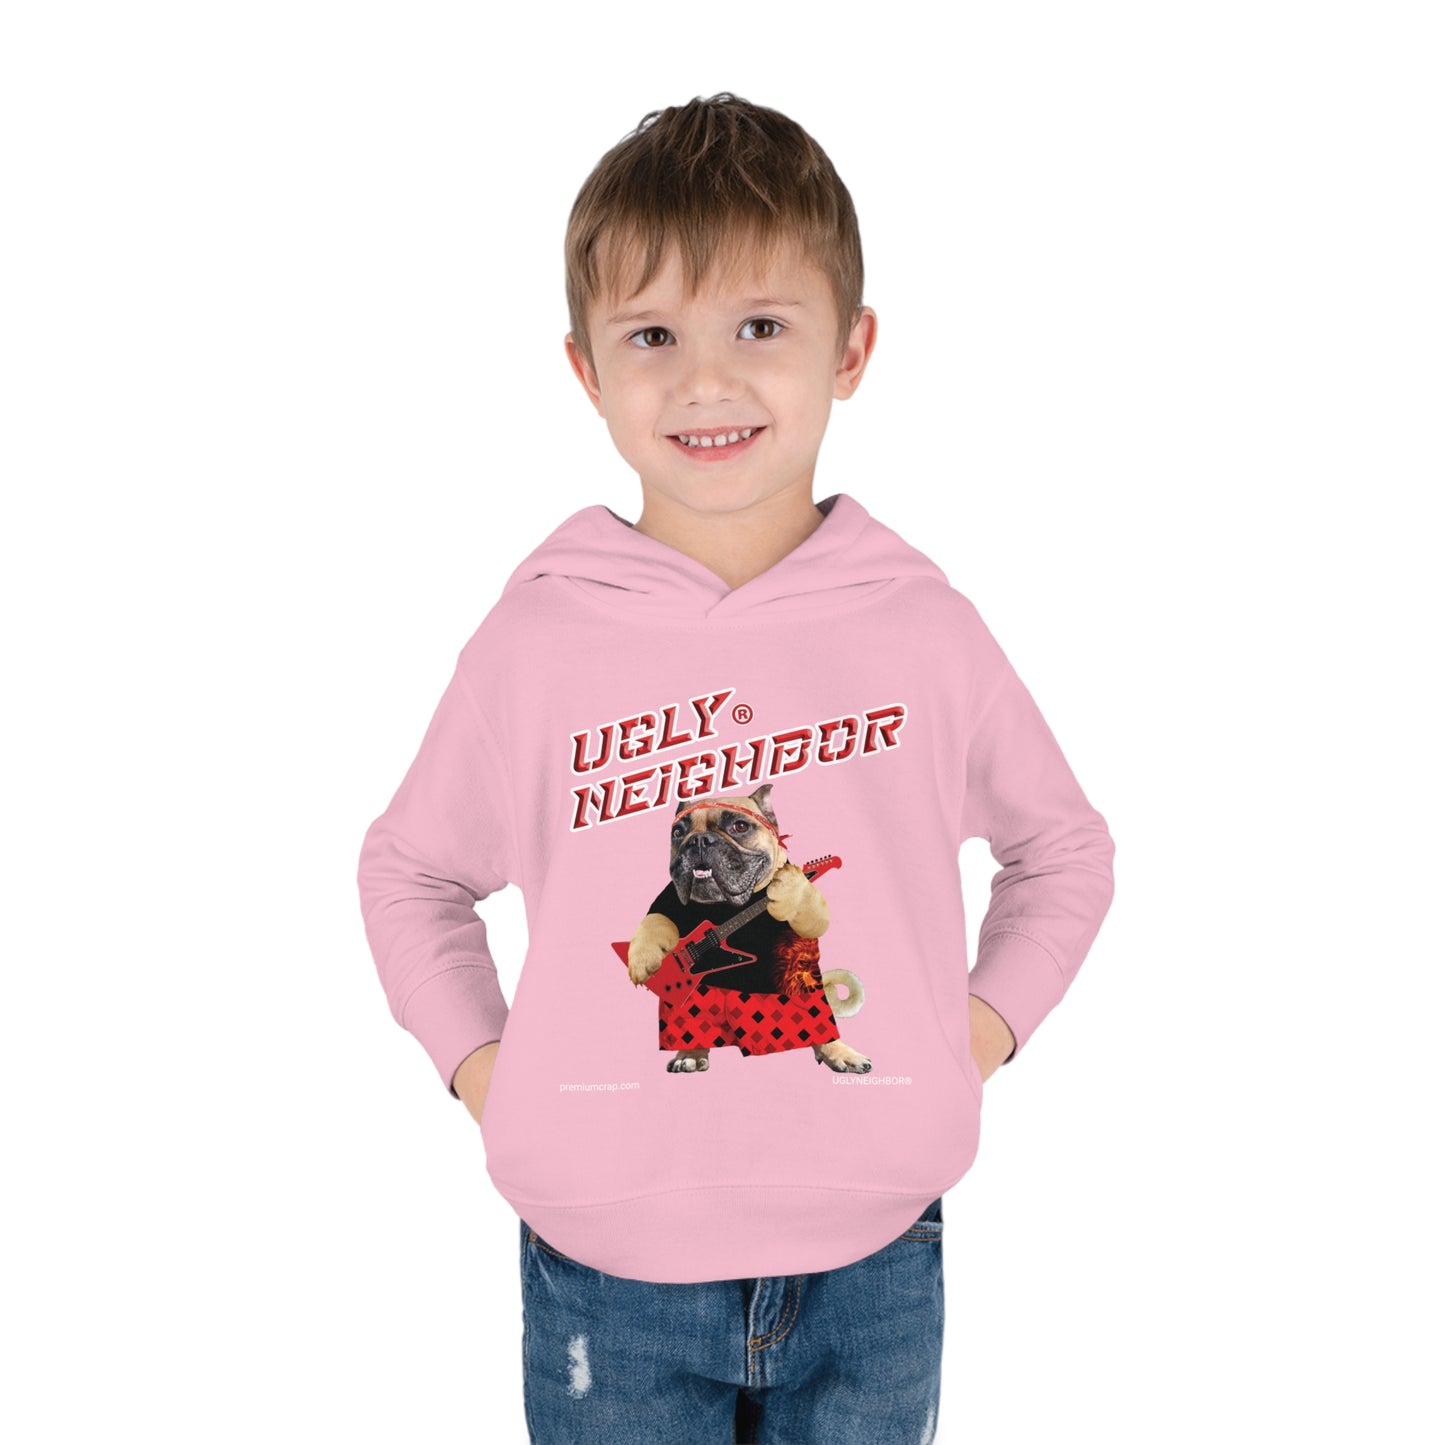 Ugly Neighbor II Toddler Pullover Fleece Hoodie